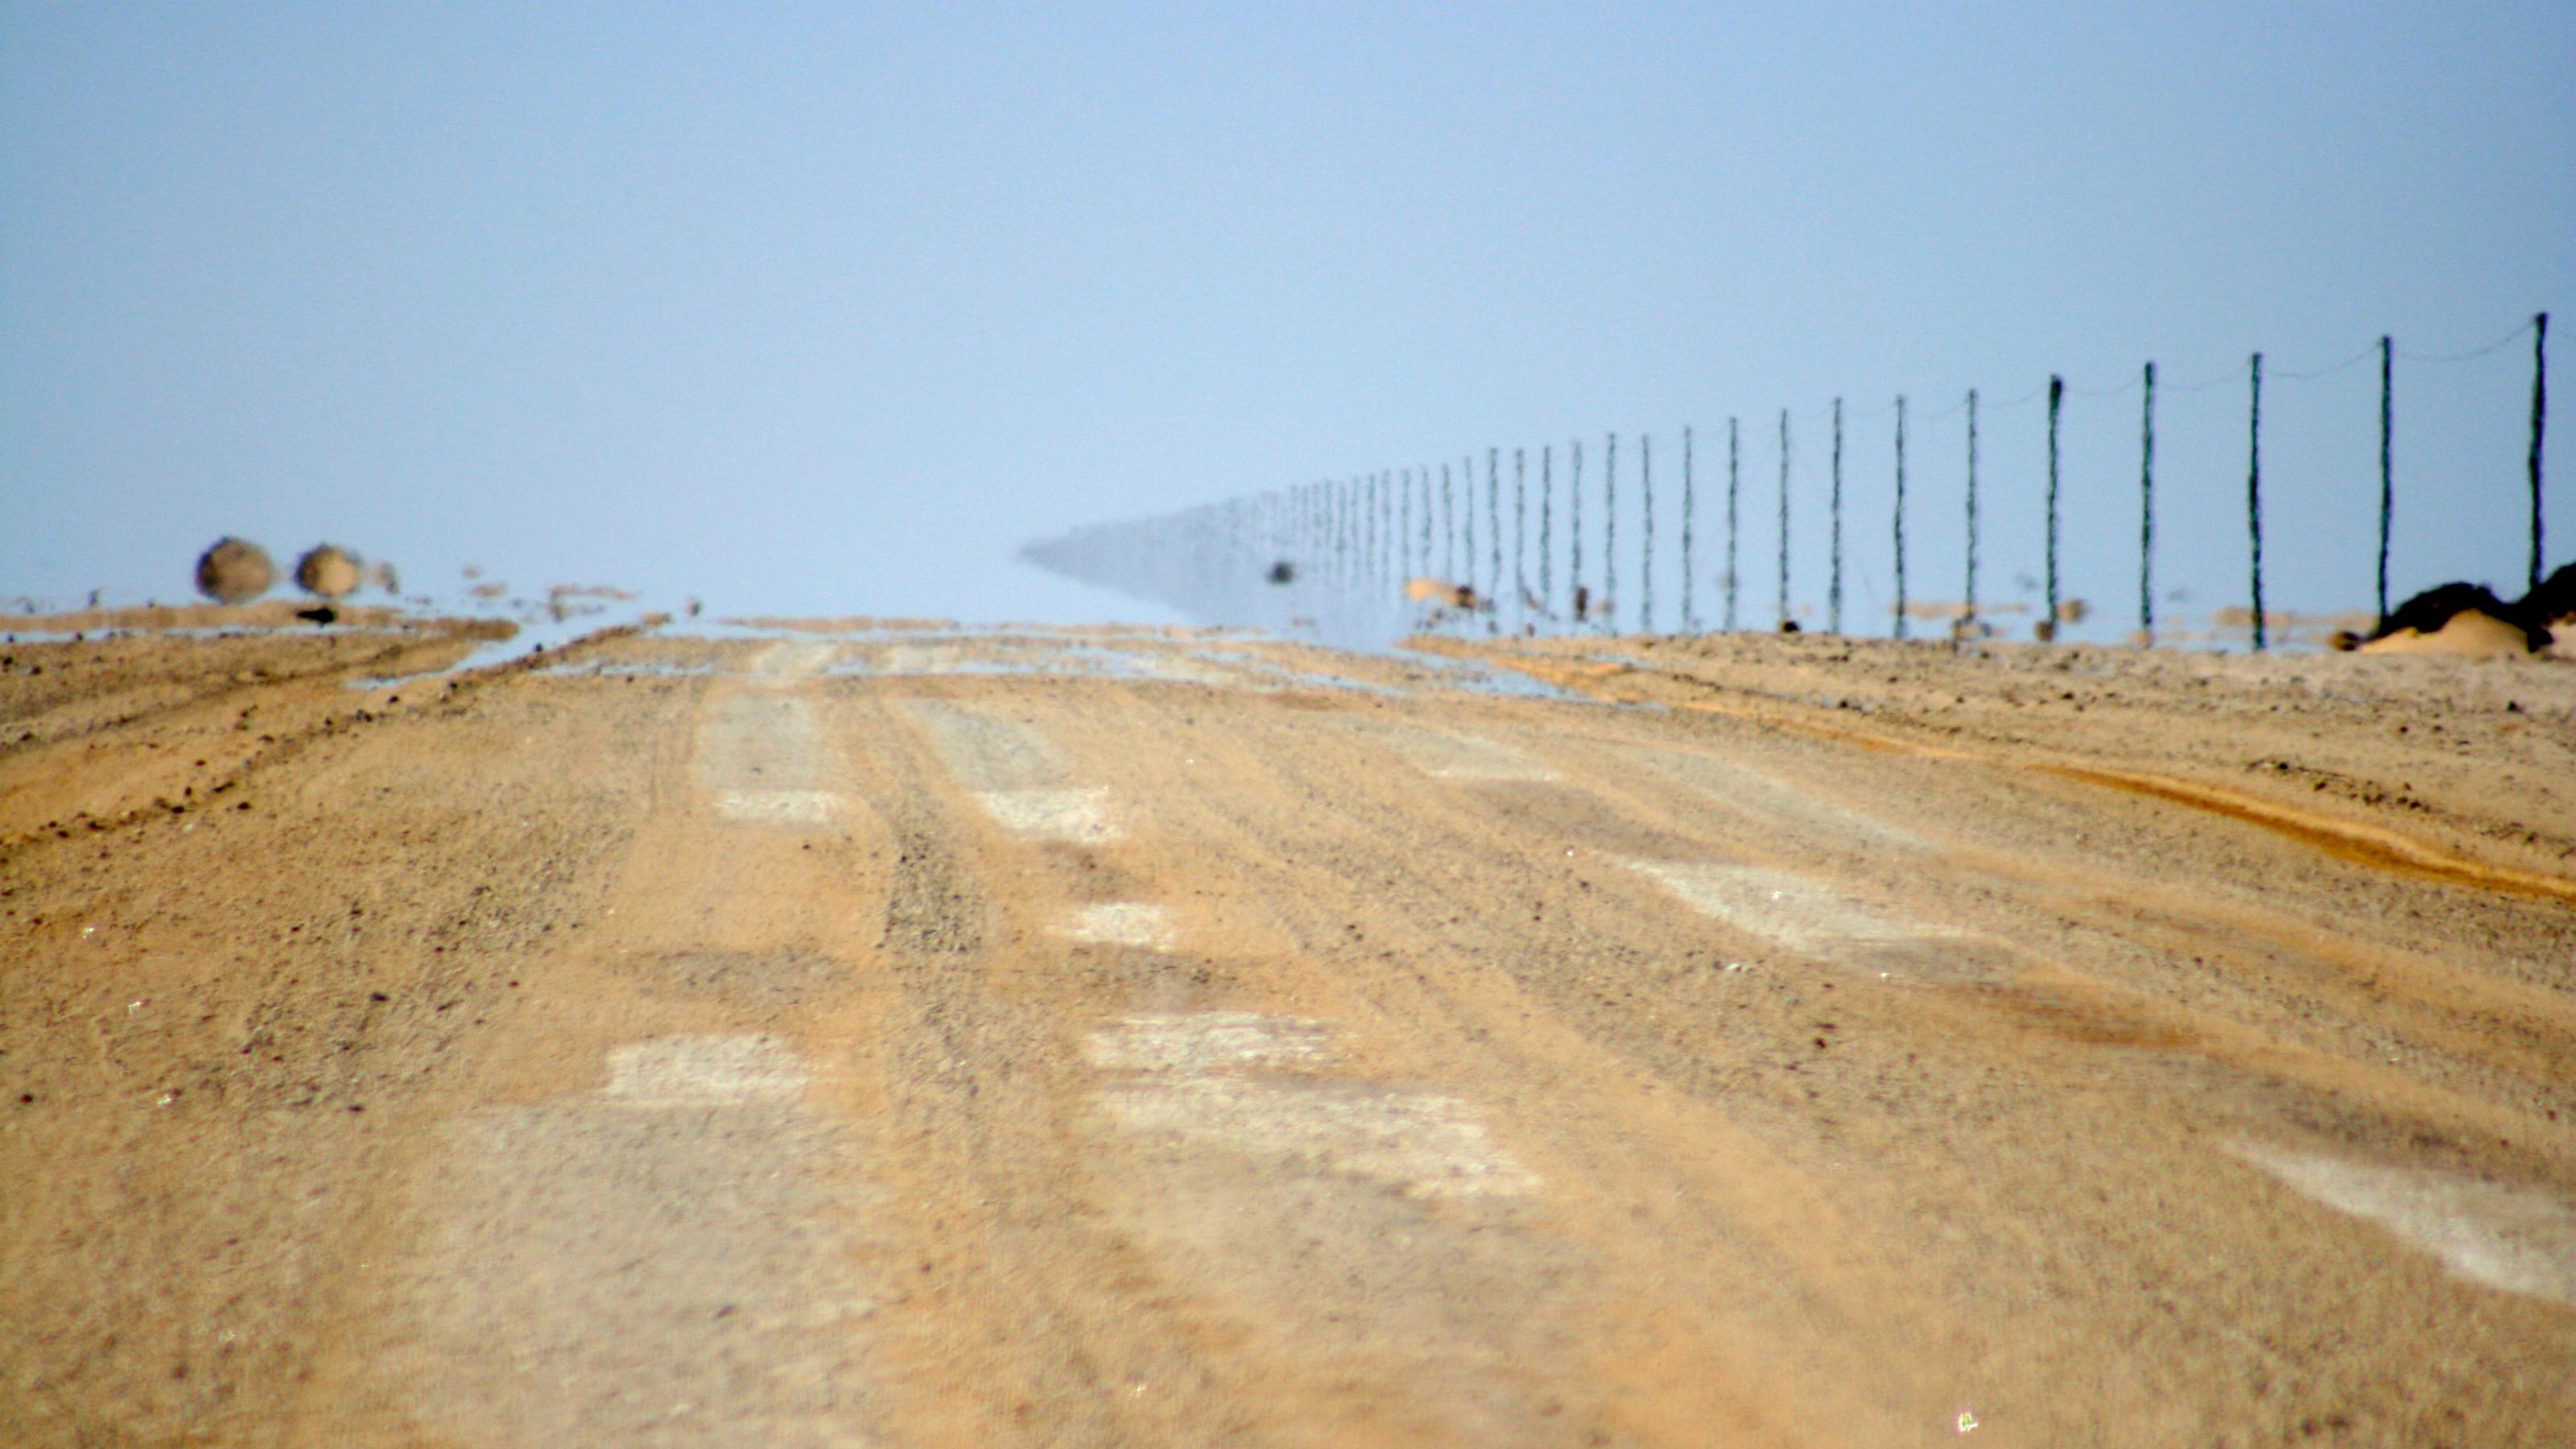 Eine Sandpiste, rechts steht eine Reihe von Strommasten. Weiter hinten verschwimmen Wüstenboden und Masten wegen einer Luftspiegelung mit dem Himmel. Wohin also führt diese Straße?